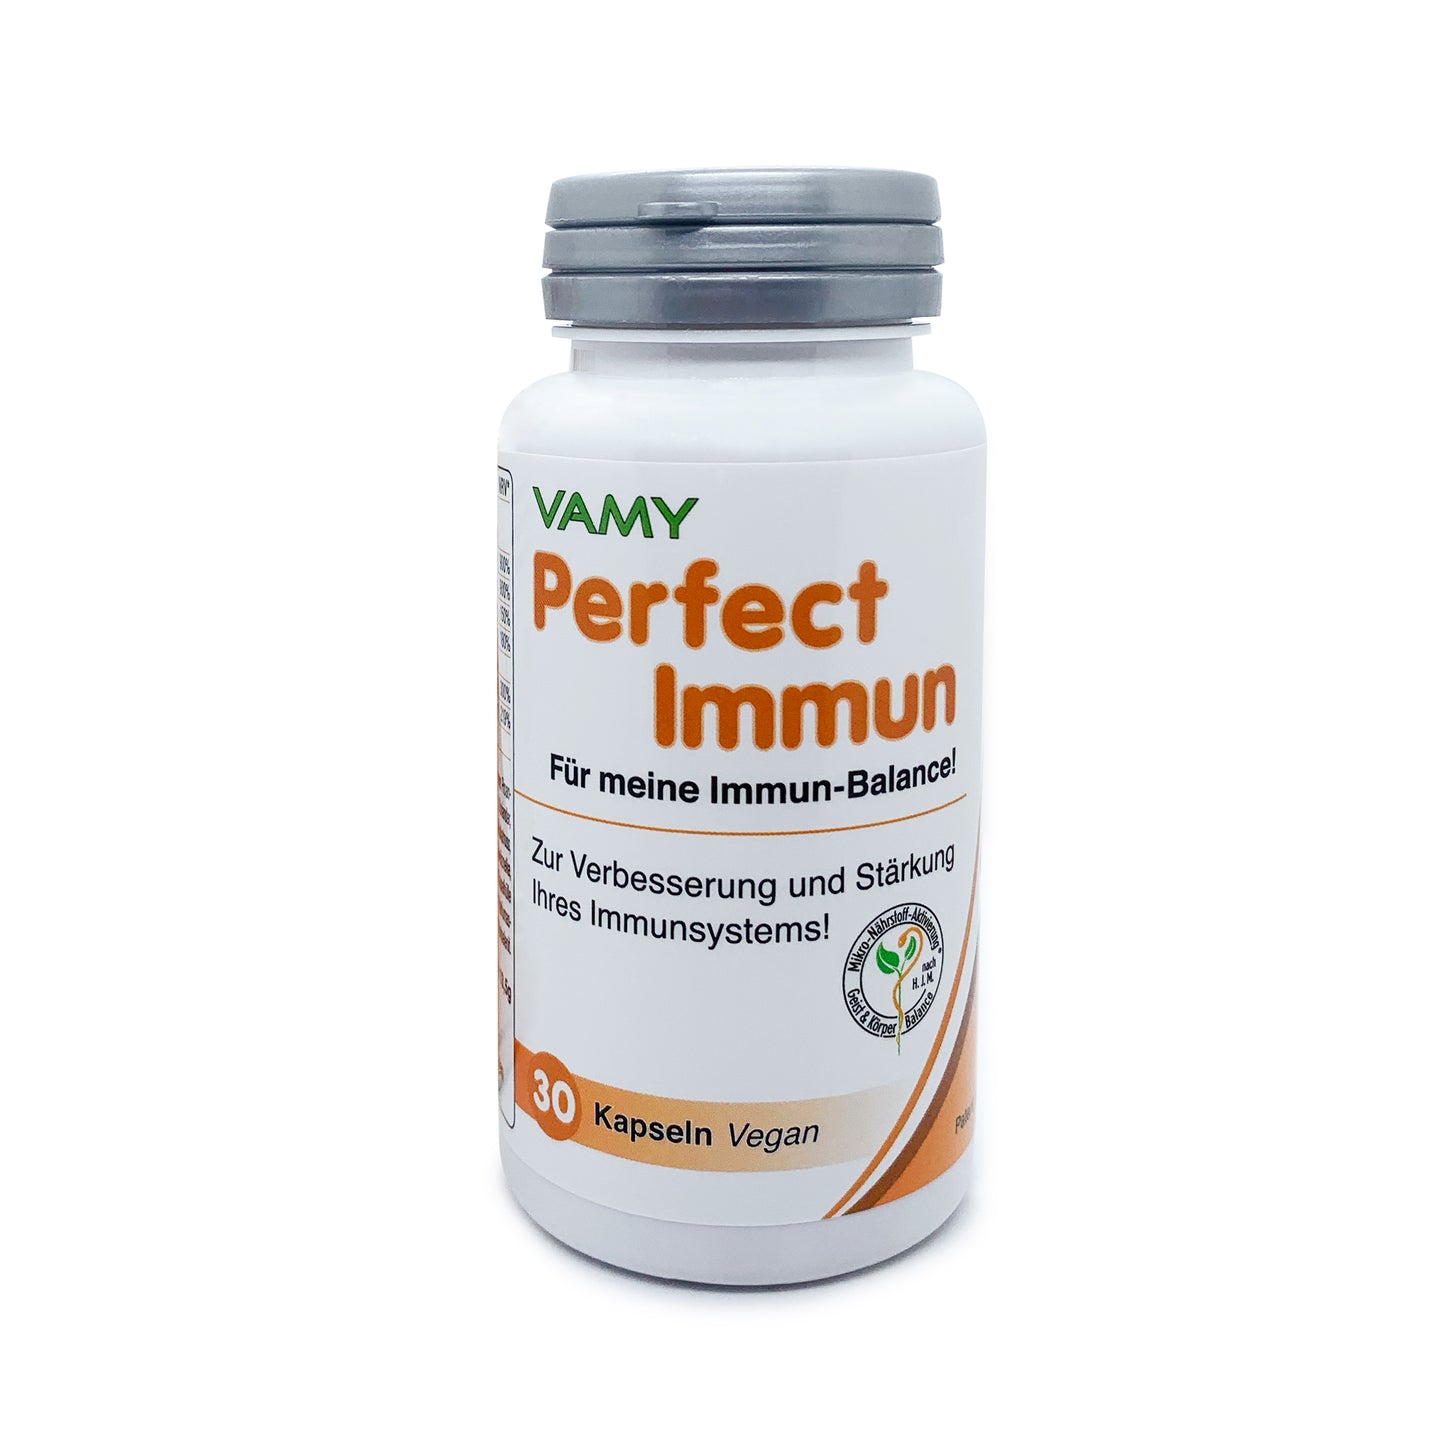 VAMY Perfect Immun